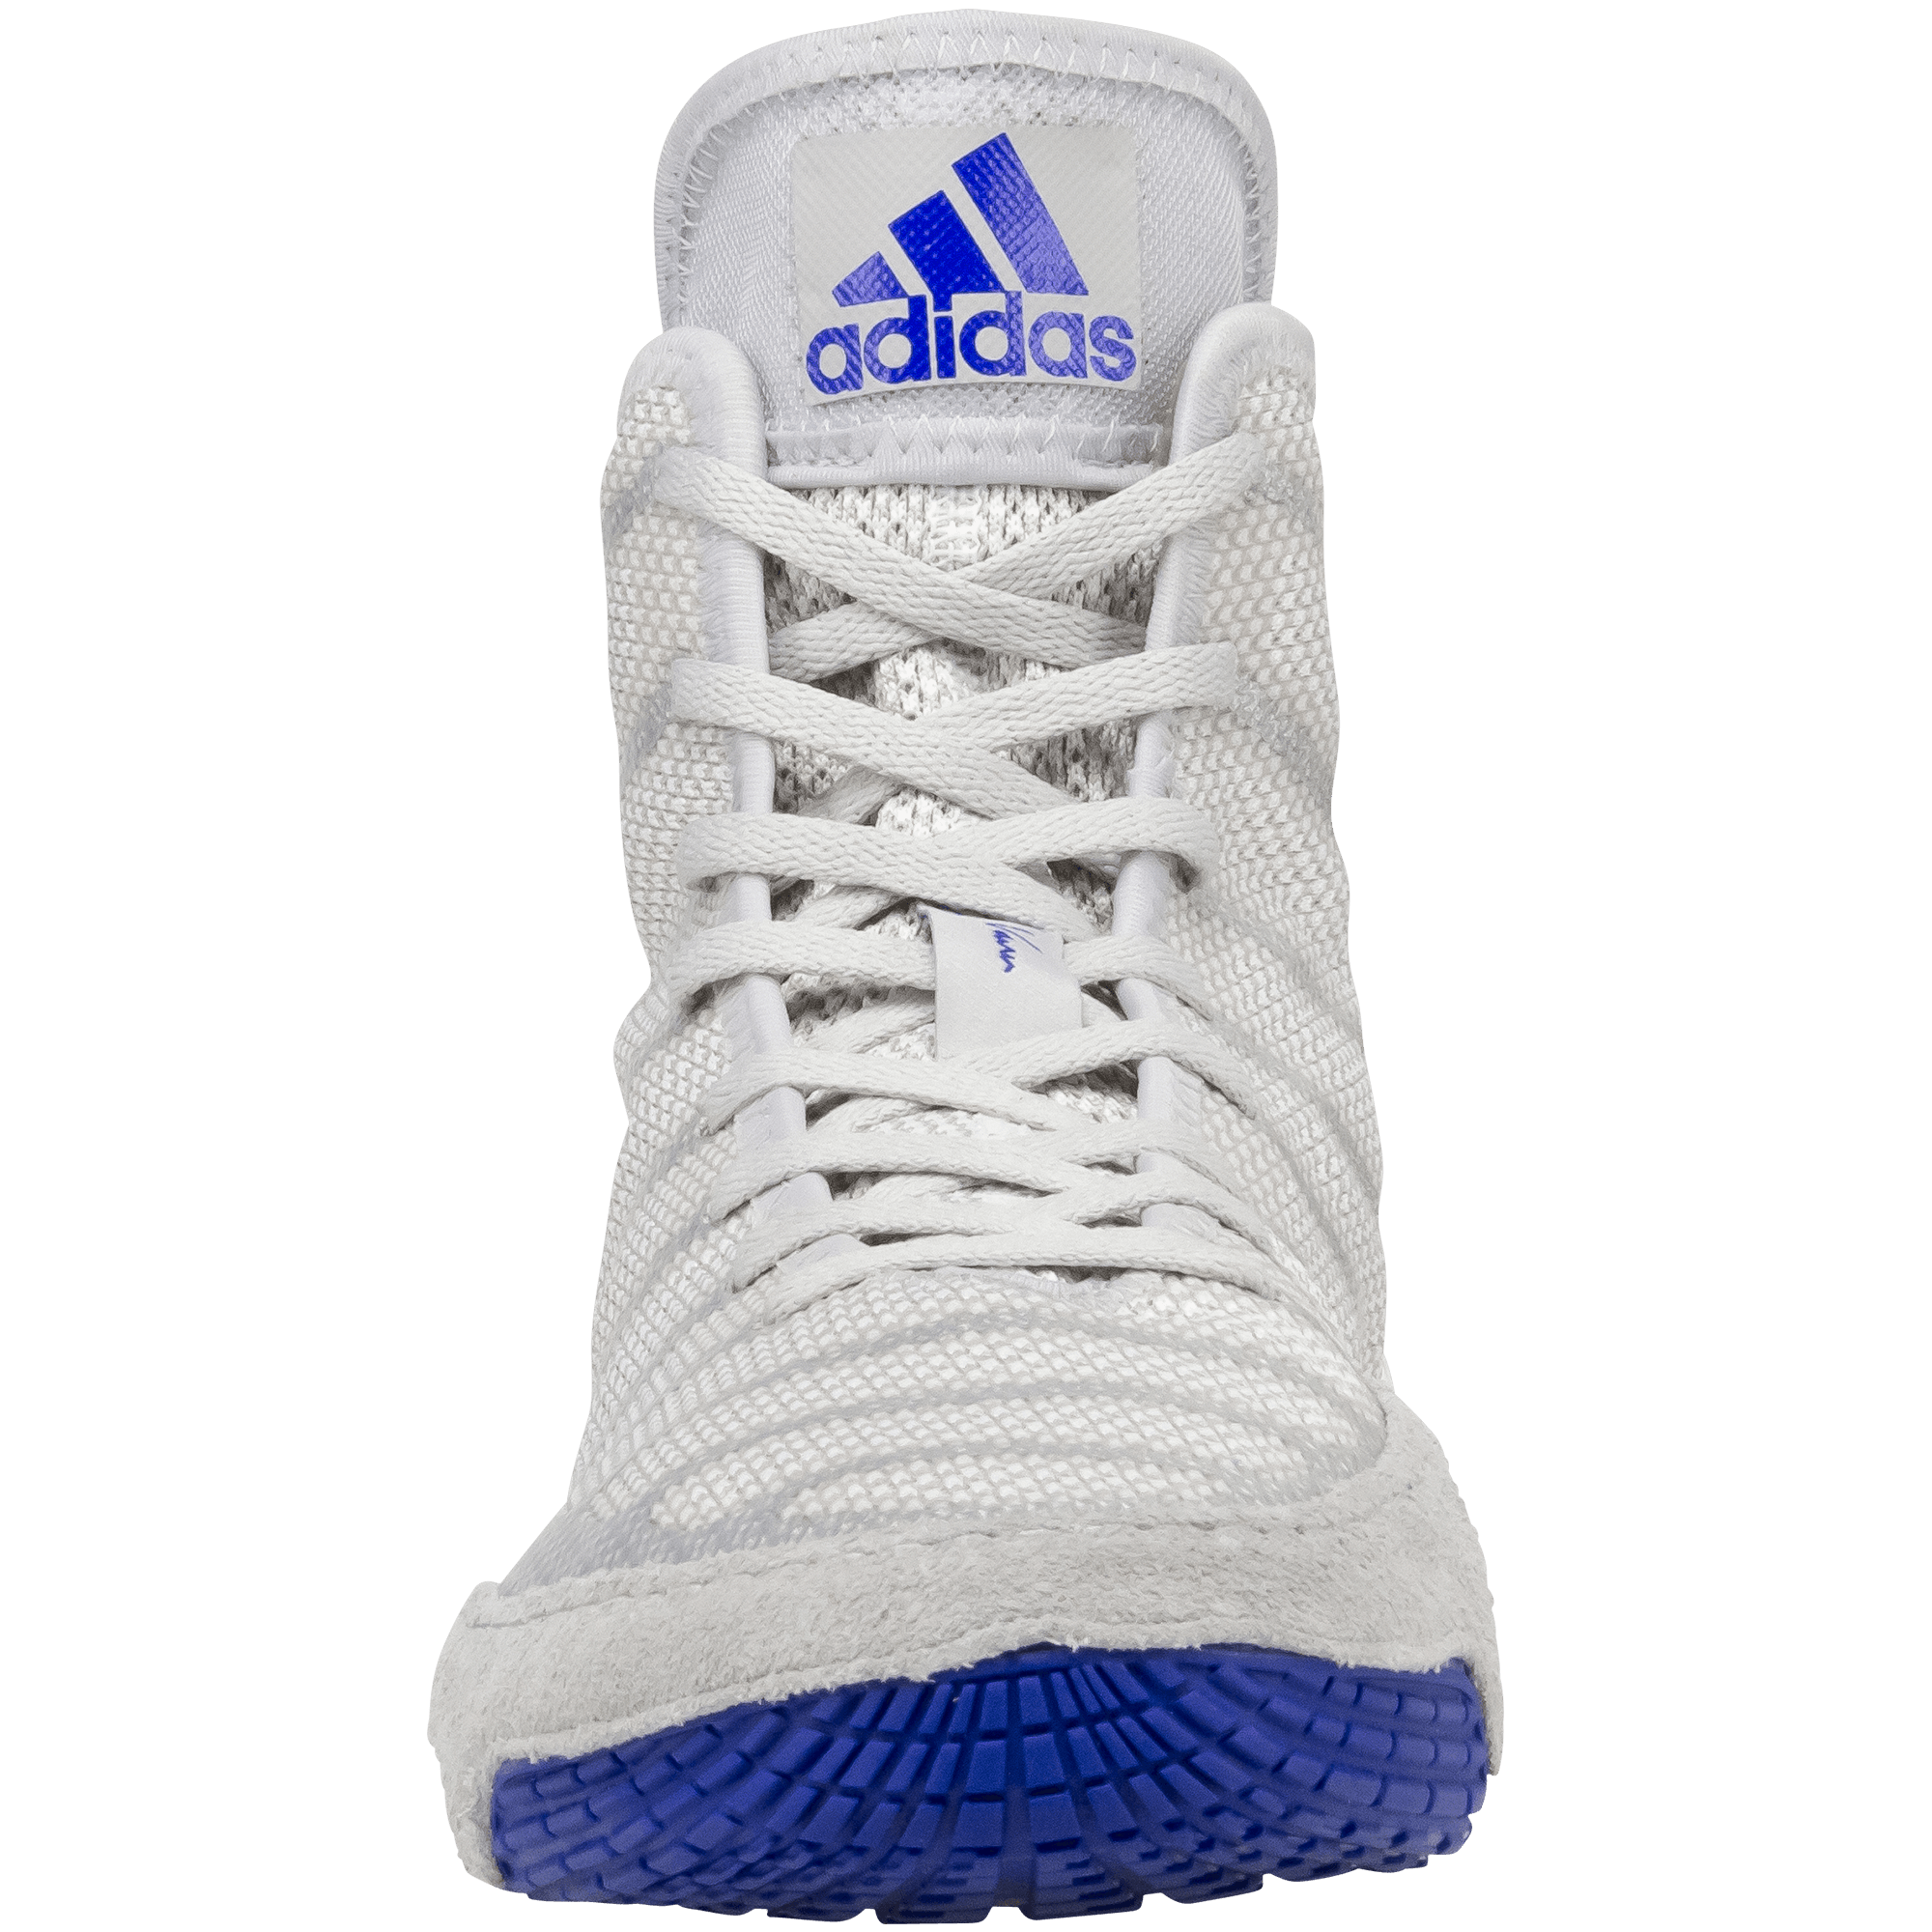 Blue and White Adidas Logo - Adidas adiZero Varner 2 Shoes | WrestlingMart | Free Shipping